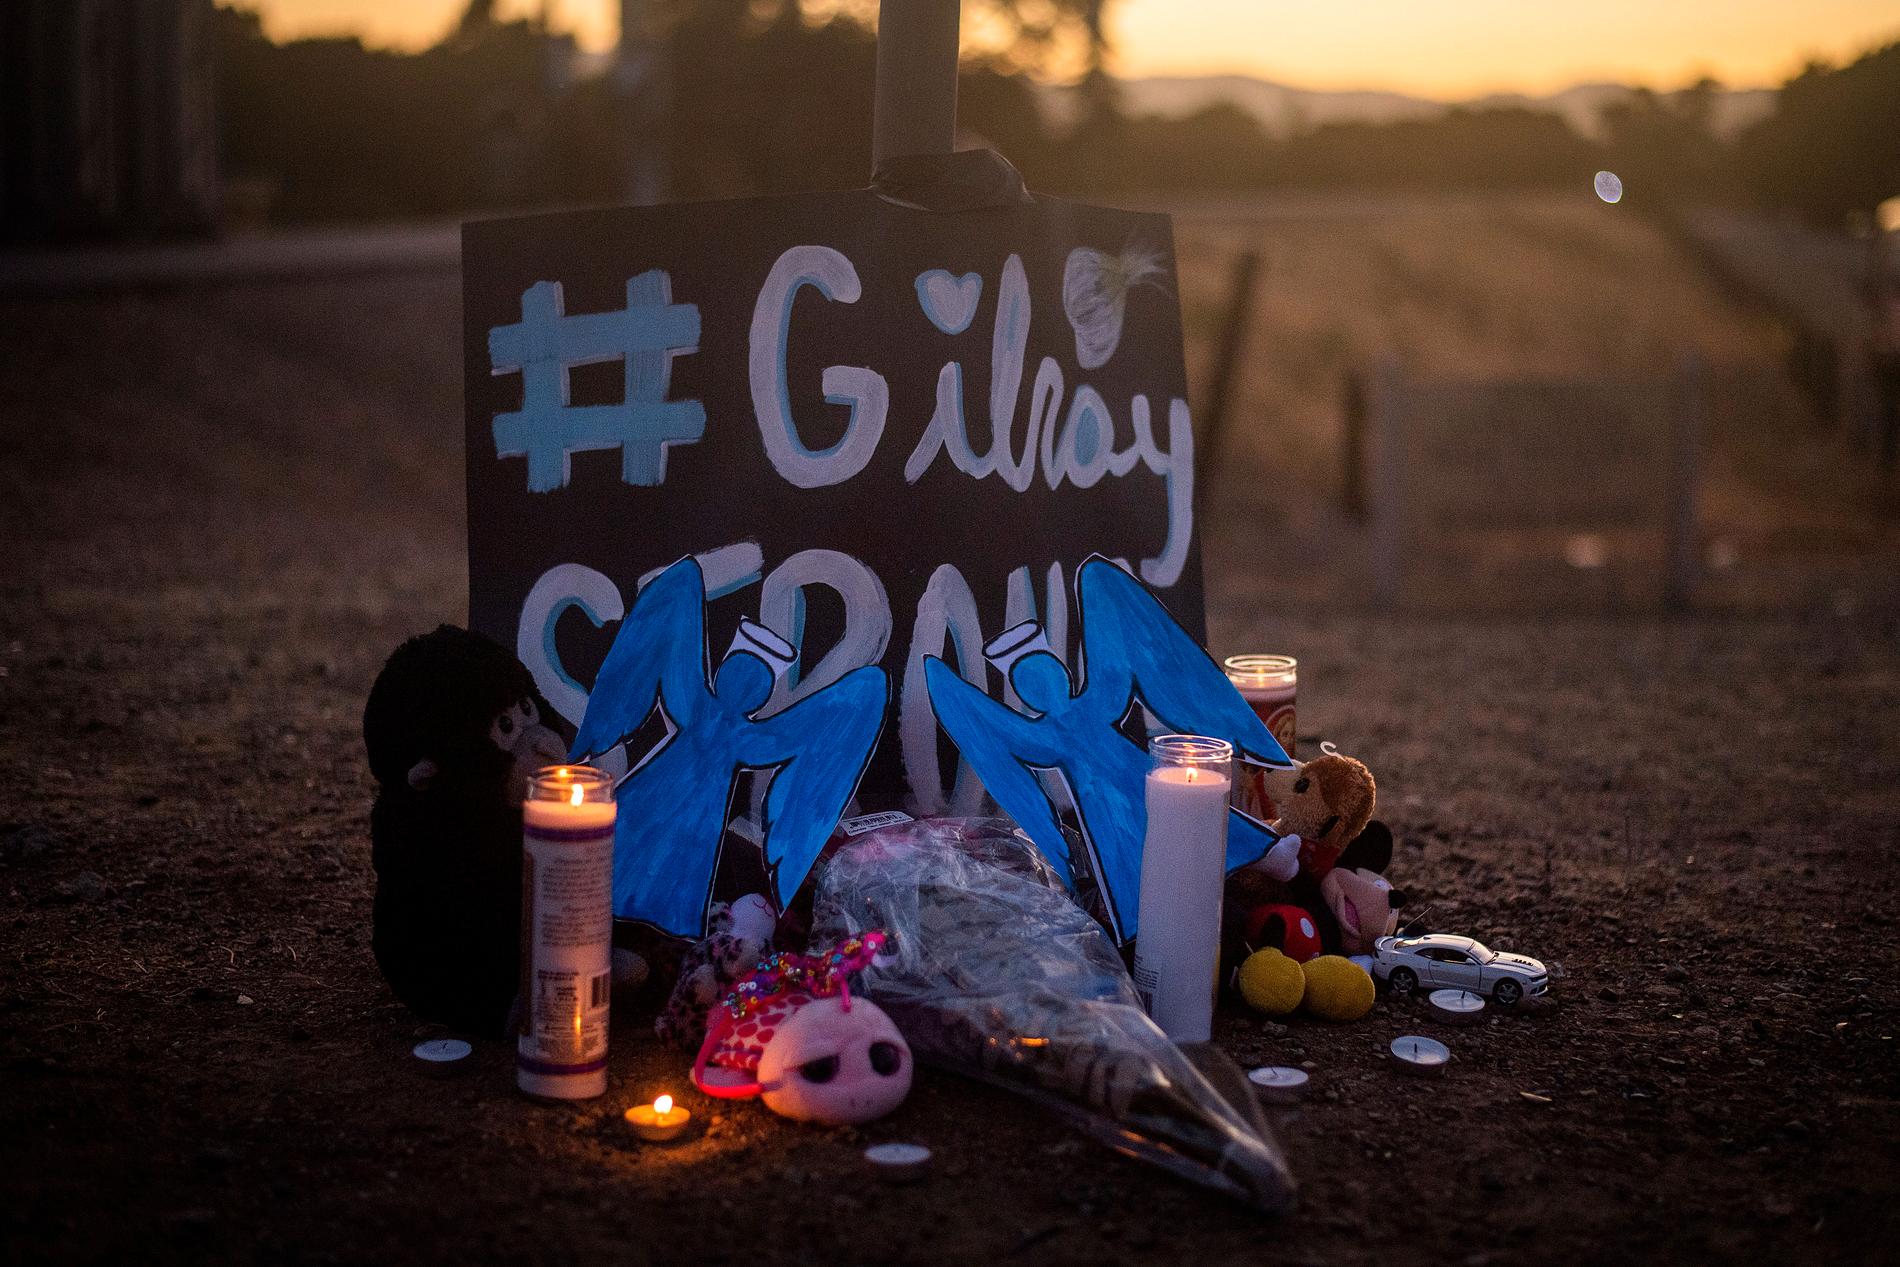 Ljus brinner för offren i Gilroy i Kalifornien.